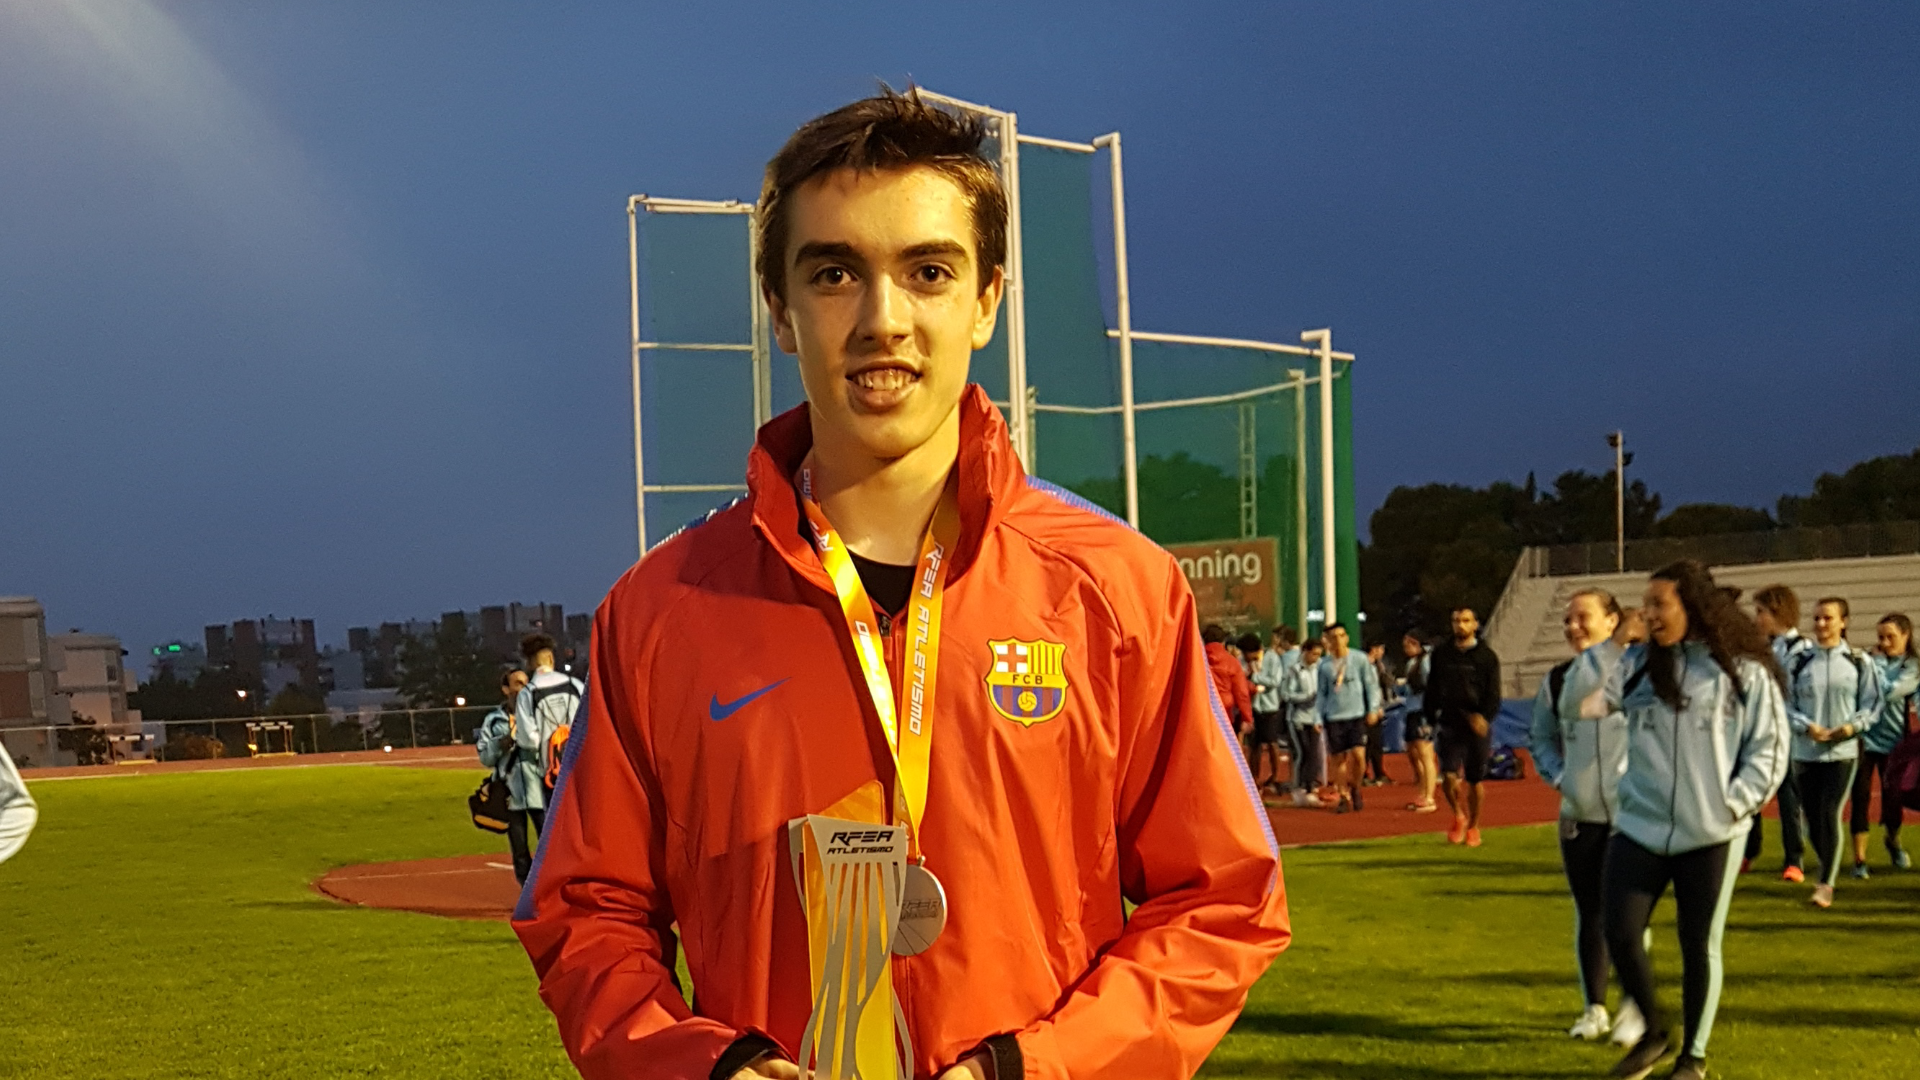 Antonio Tabanera Manzanares Subcampeón de España en 110 metros vallas